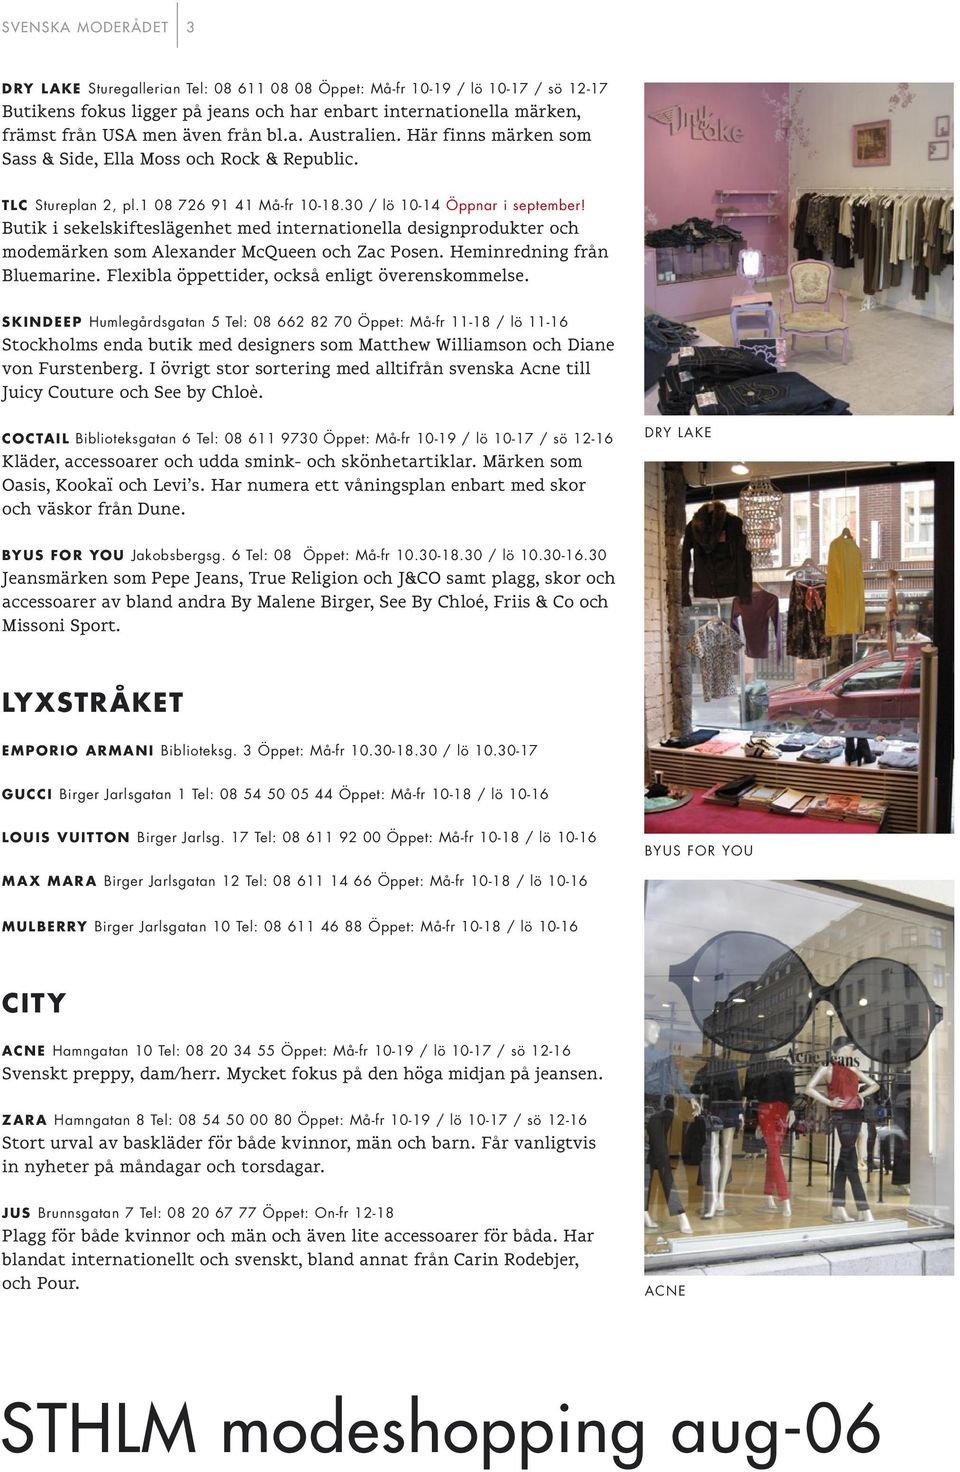 Butik i sekelskifteslägenhet med internationella designprodukter och modemärken som Alexander McQueen och Zac Posen. Heminredning från Bluemarine. Flexibla öppettider, också enligt överenskommelse.